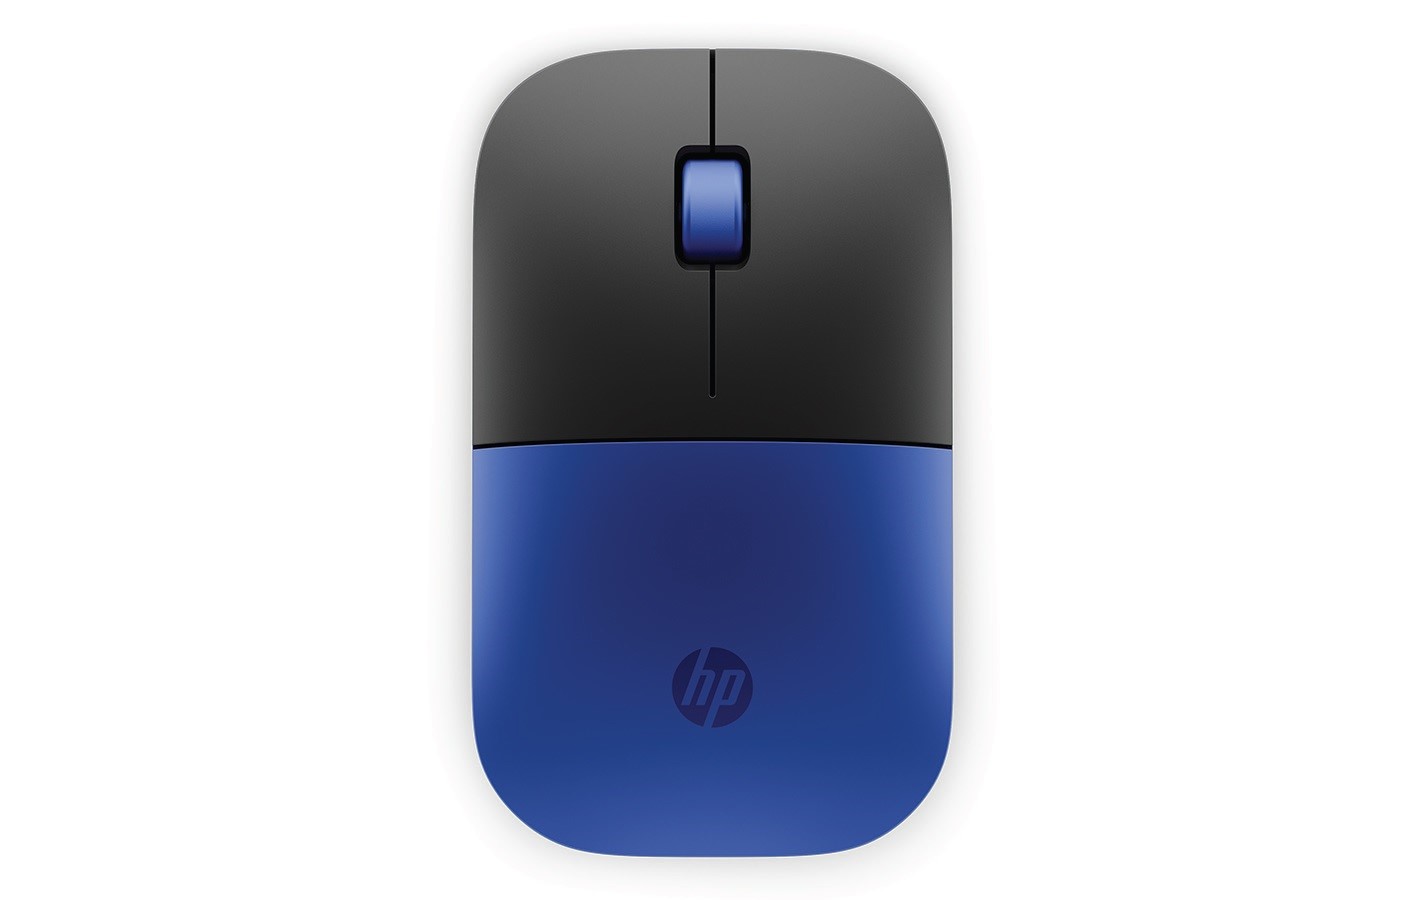 HP myš - Z3700 Mouse, Wireless, Dragonfly Blue | eD system